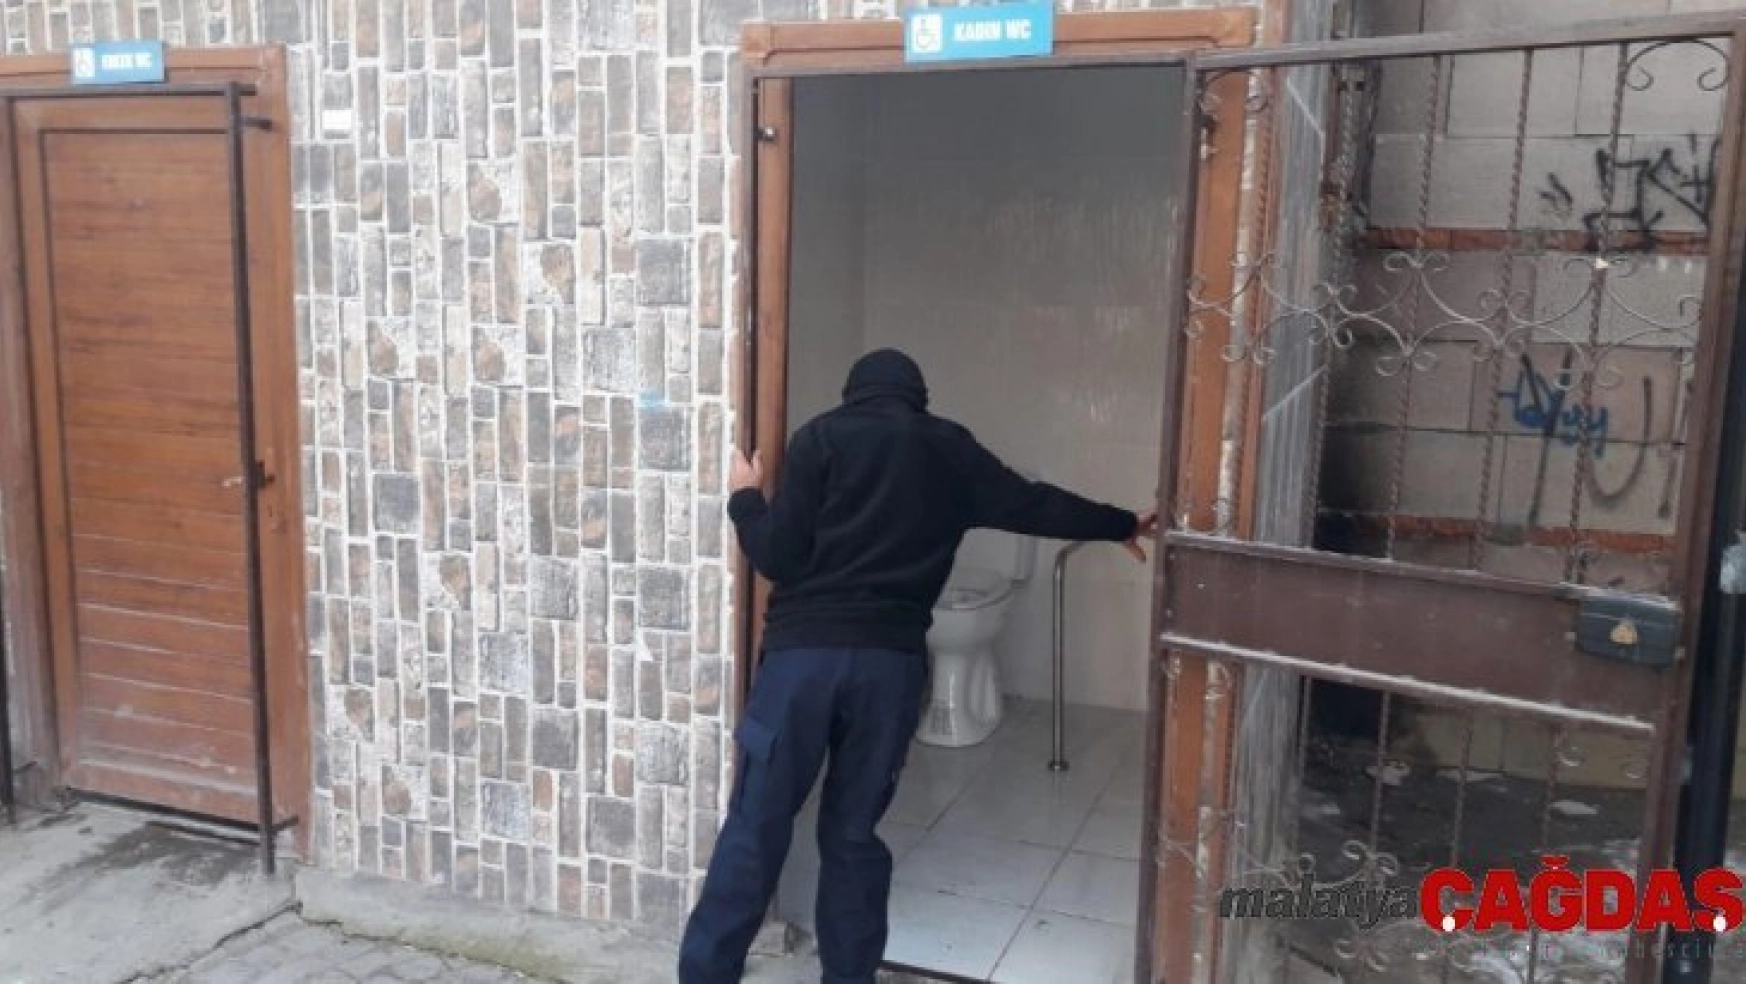 İpekyolu Belediyesinden 'wc'ler kapalı' haberine yalanlama